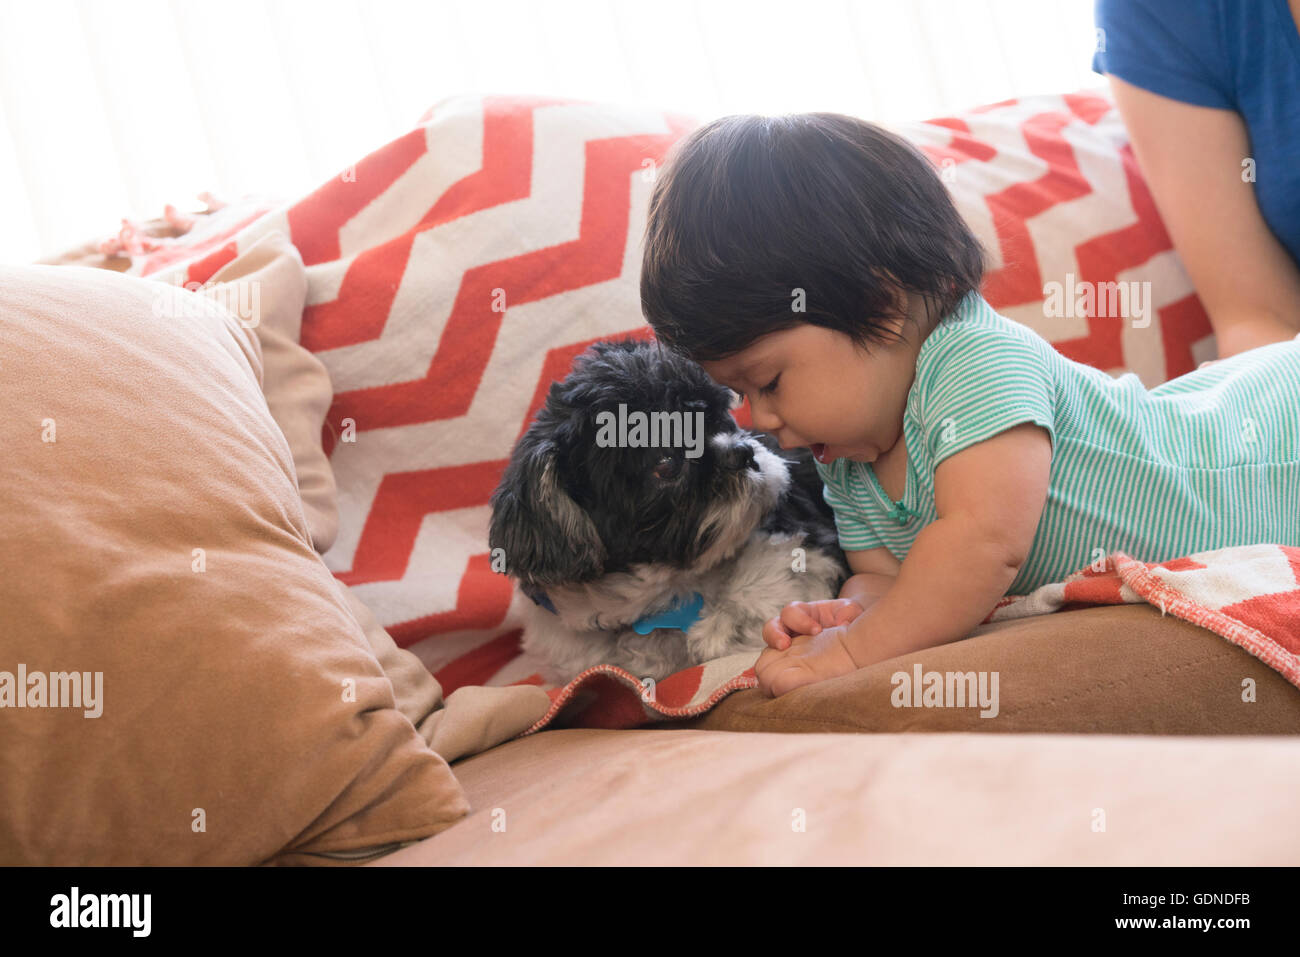 Bébé jouant avec le pet dog on sofa Banque D'Images